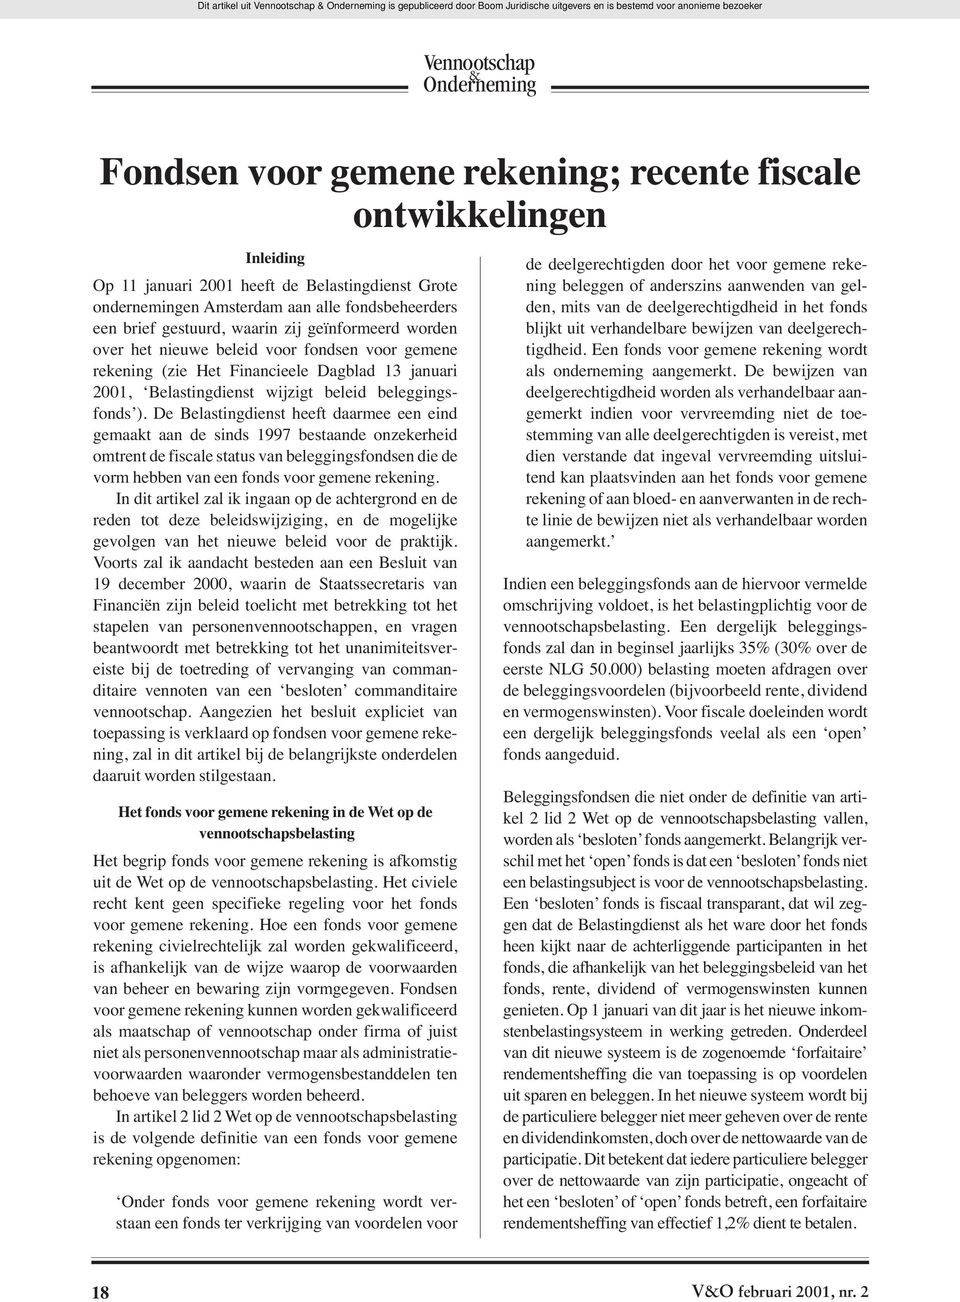 Dagblad 13 januari 2001, Belastingdienst wijzigt beleid beleggingsfonds ).